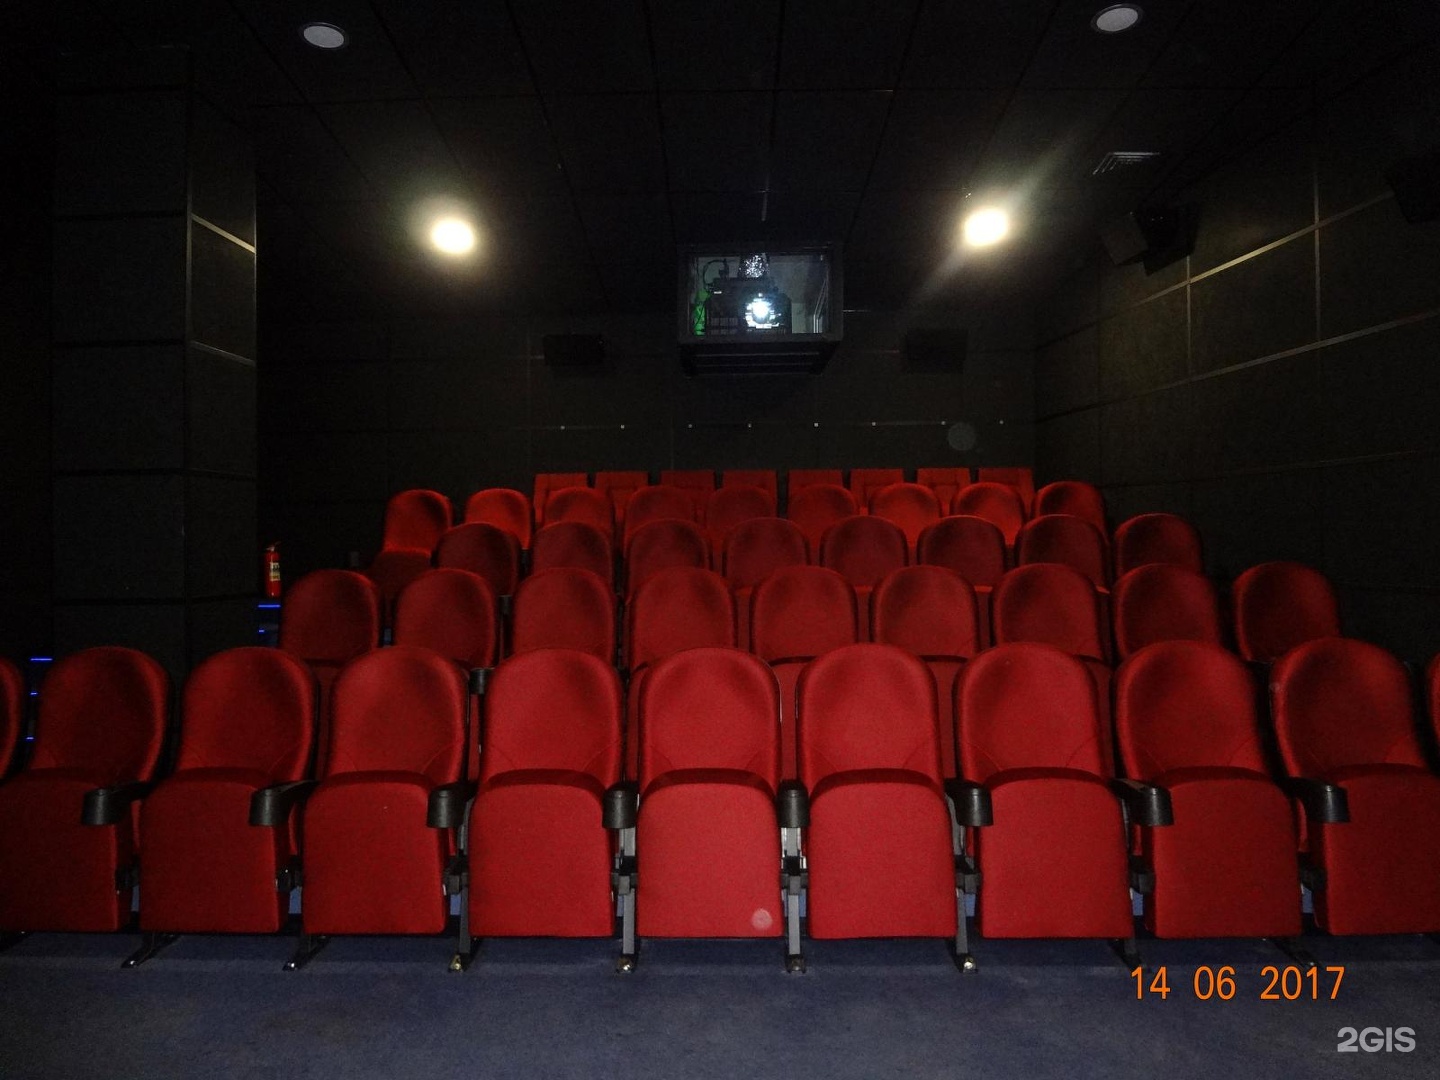 Кинотеатр волжский билеты